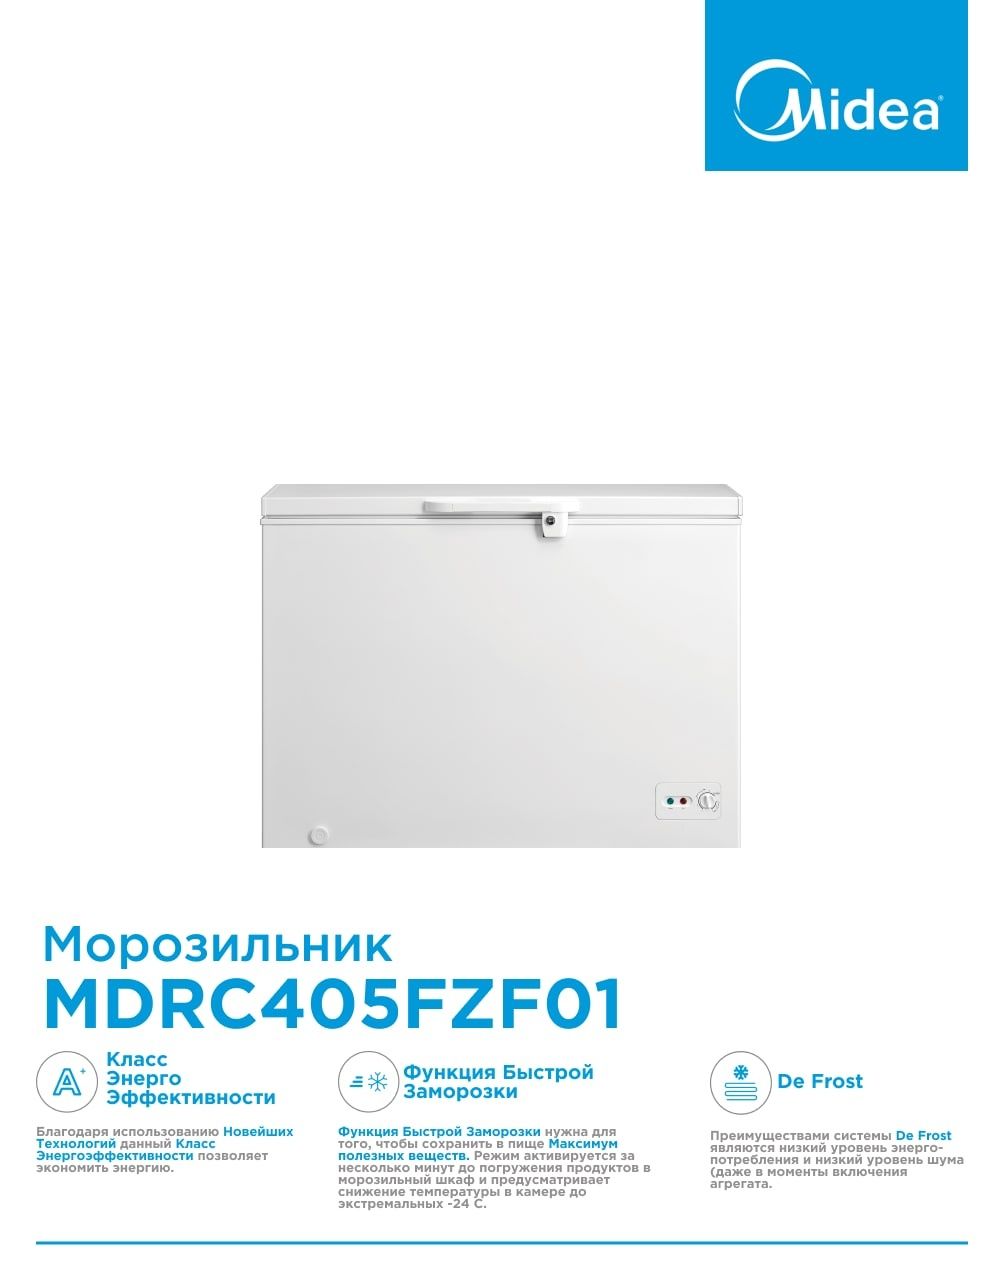 Морозильные камеры Midea  M:MDRC405FZF01 литр: 300